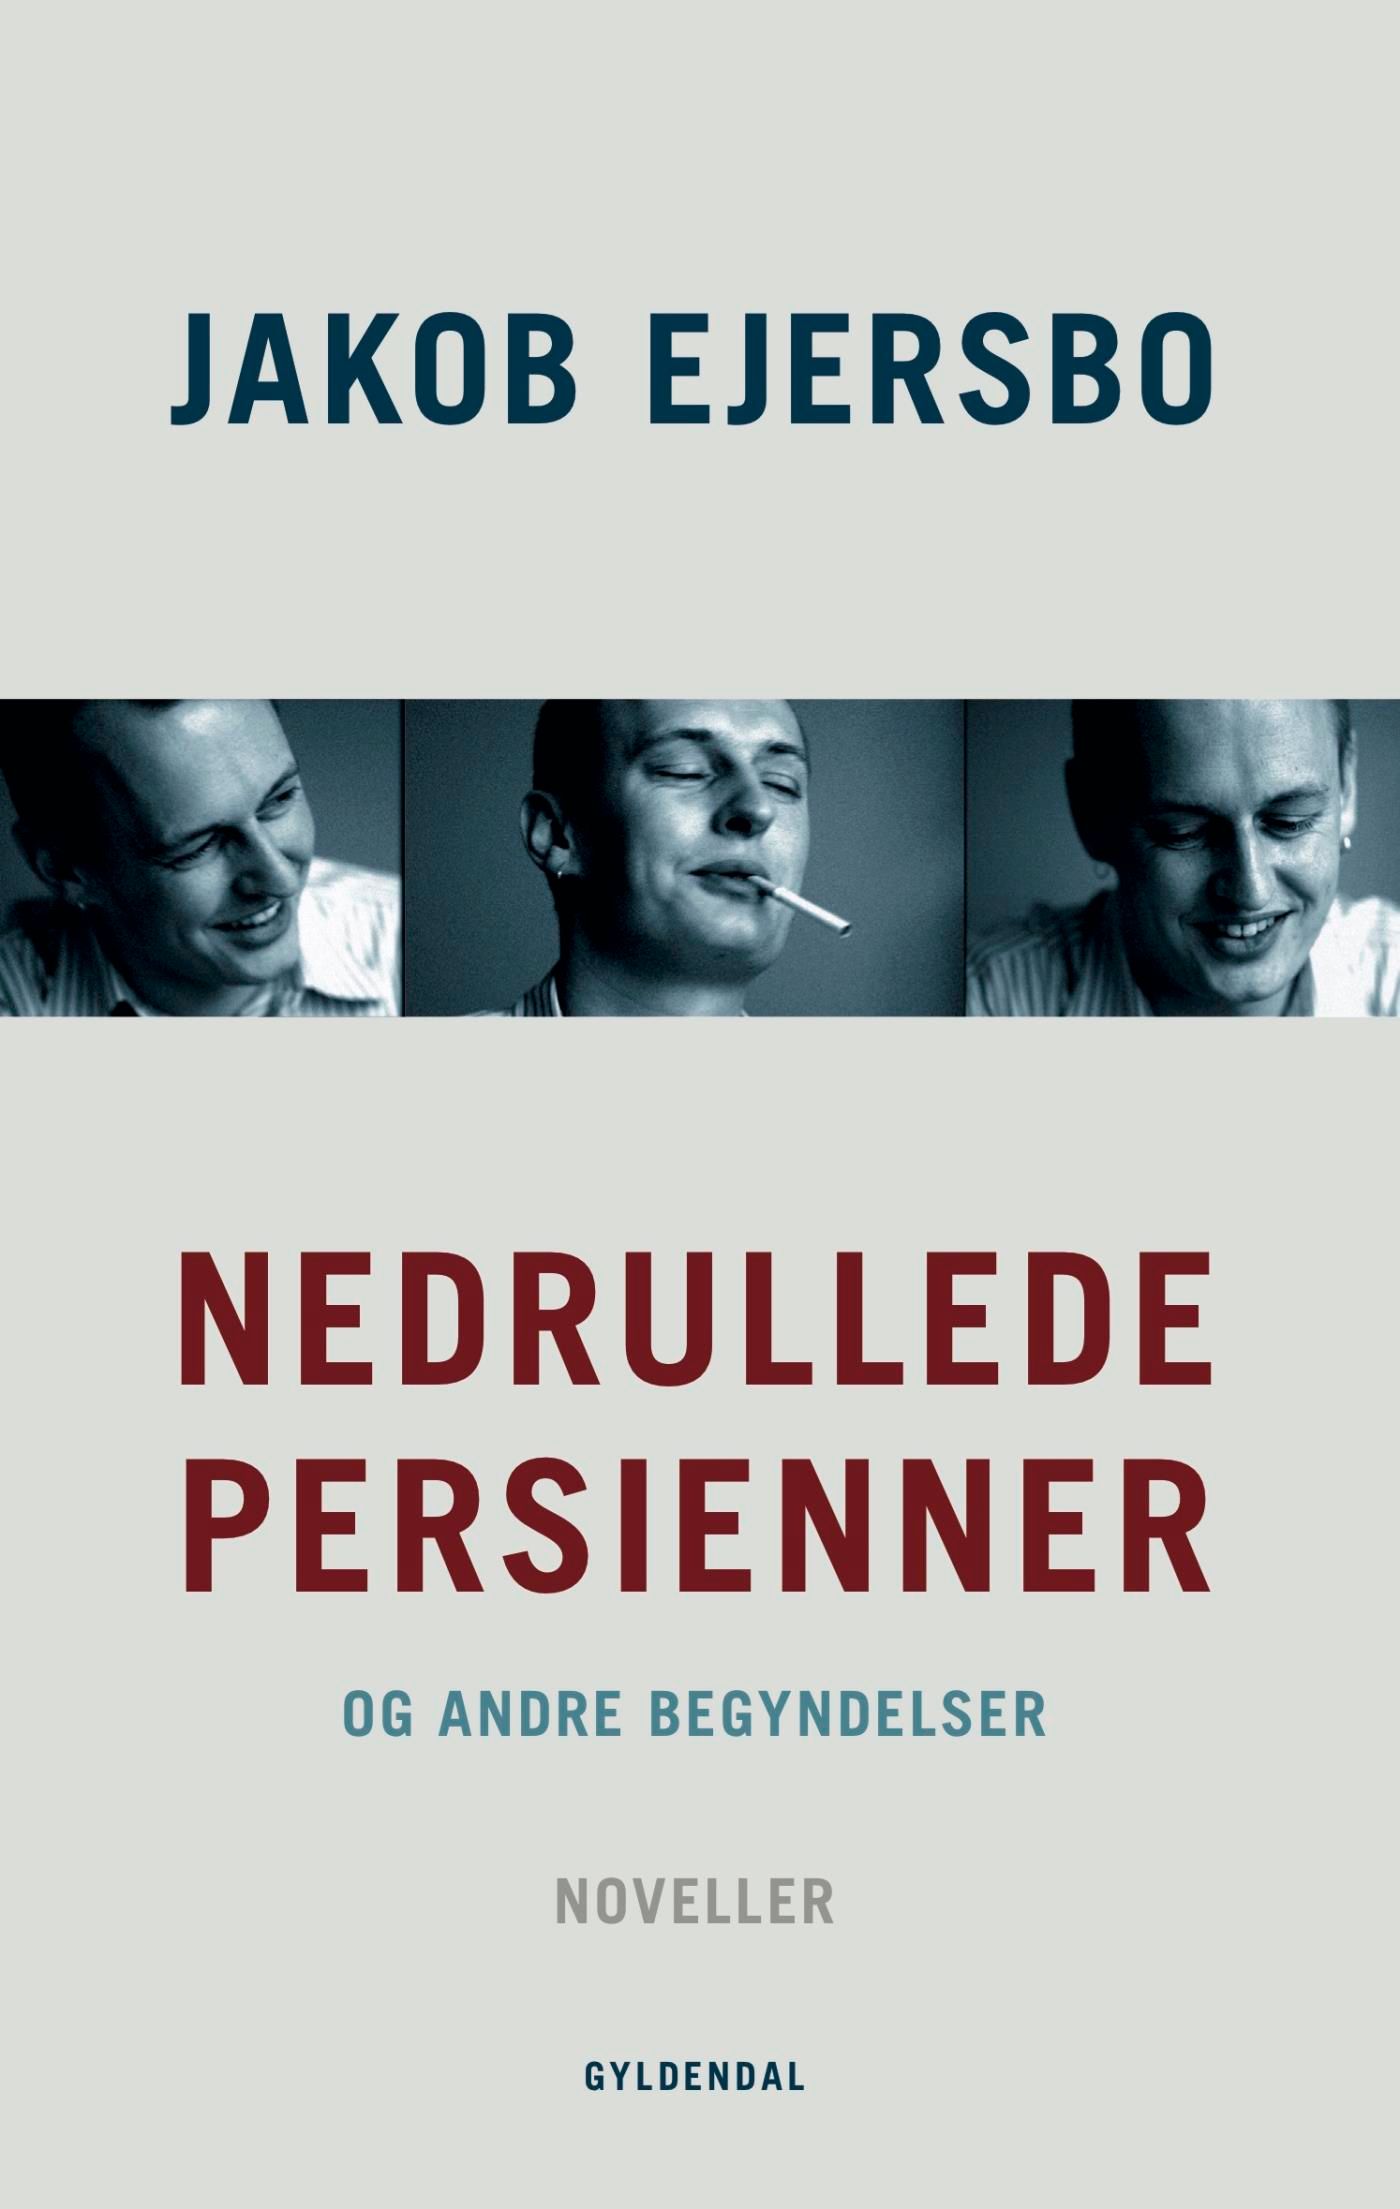 Nedrullede persienner, e-bog af Jakob Ejersbo